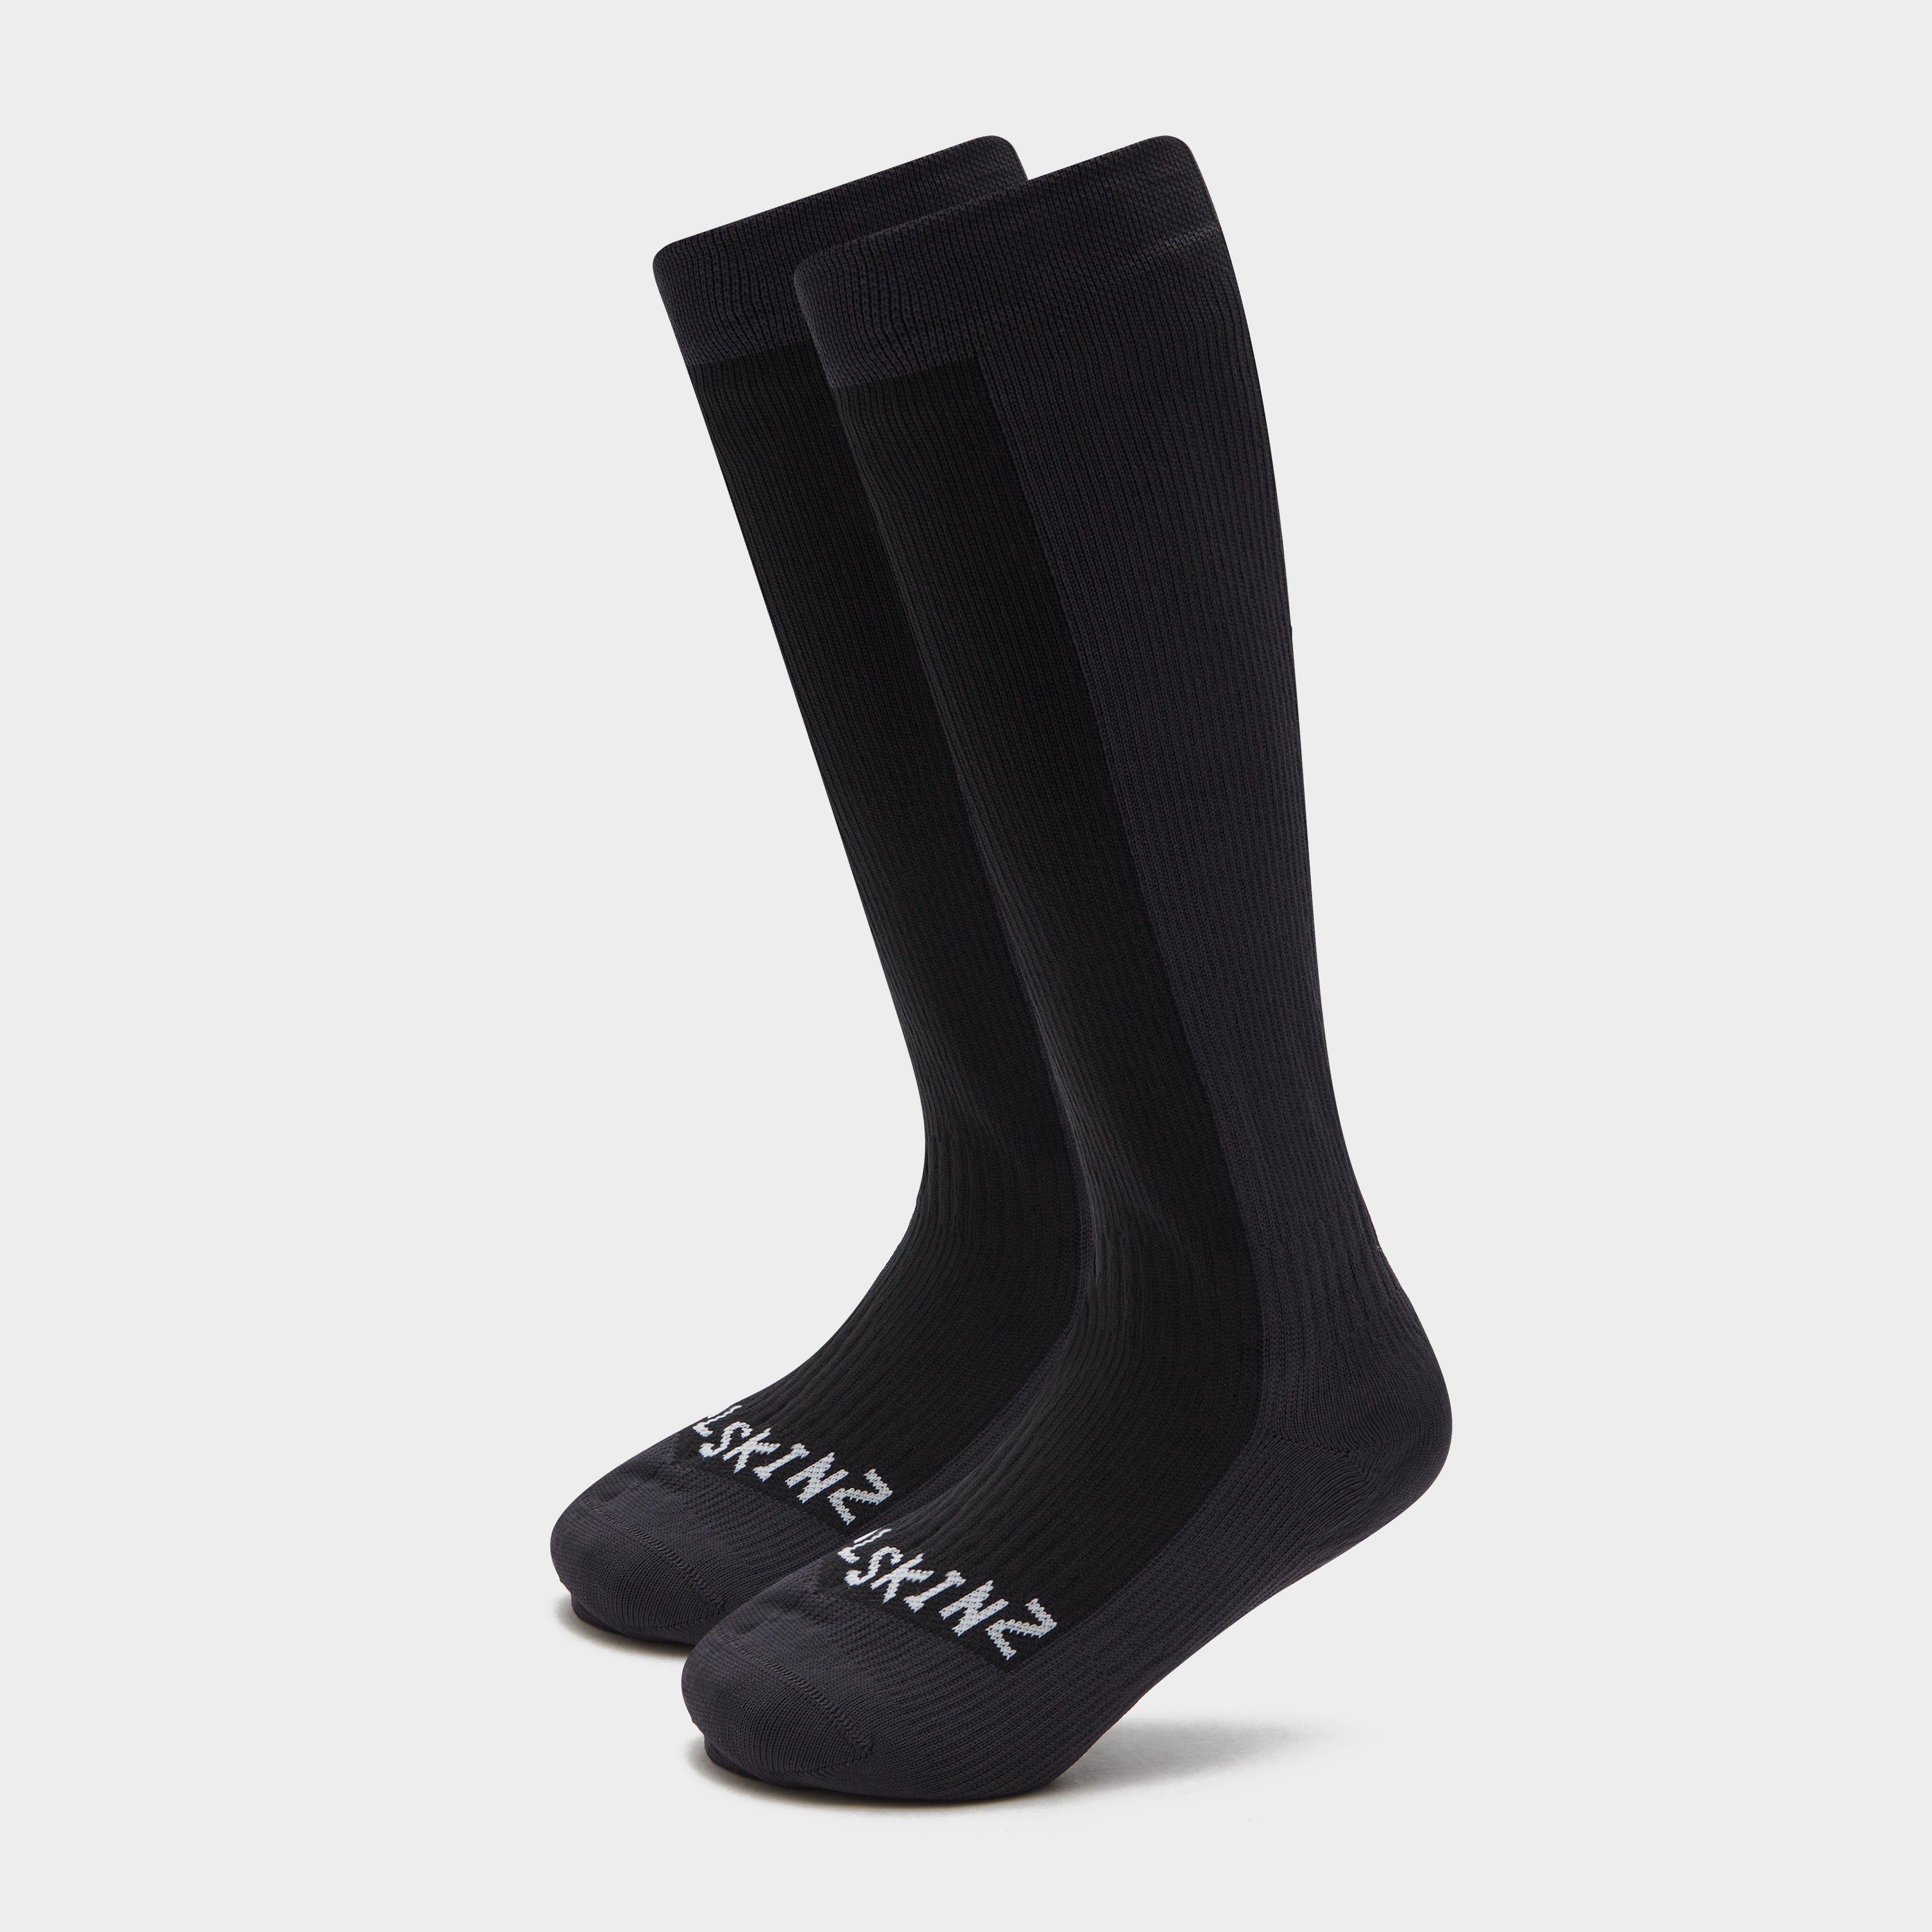 SealSkinz Sealskinz Waterproof Knee Socks - Black, Black